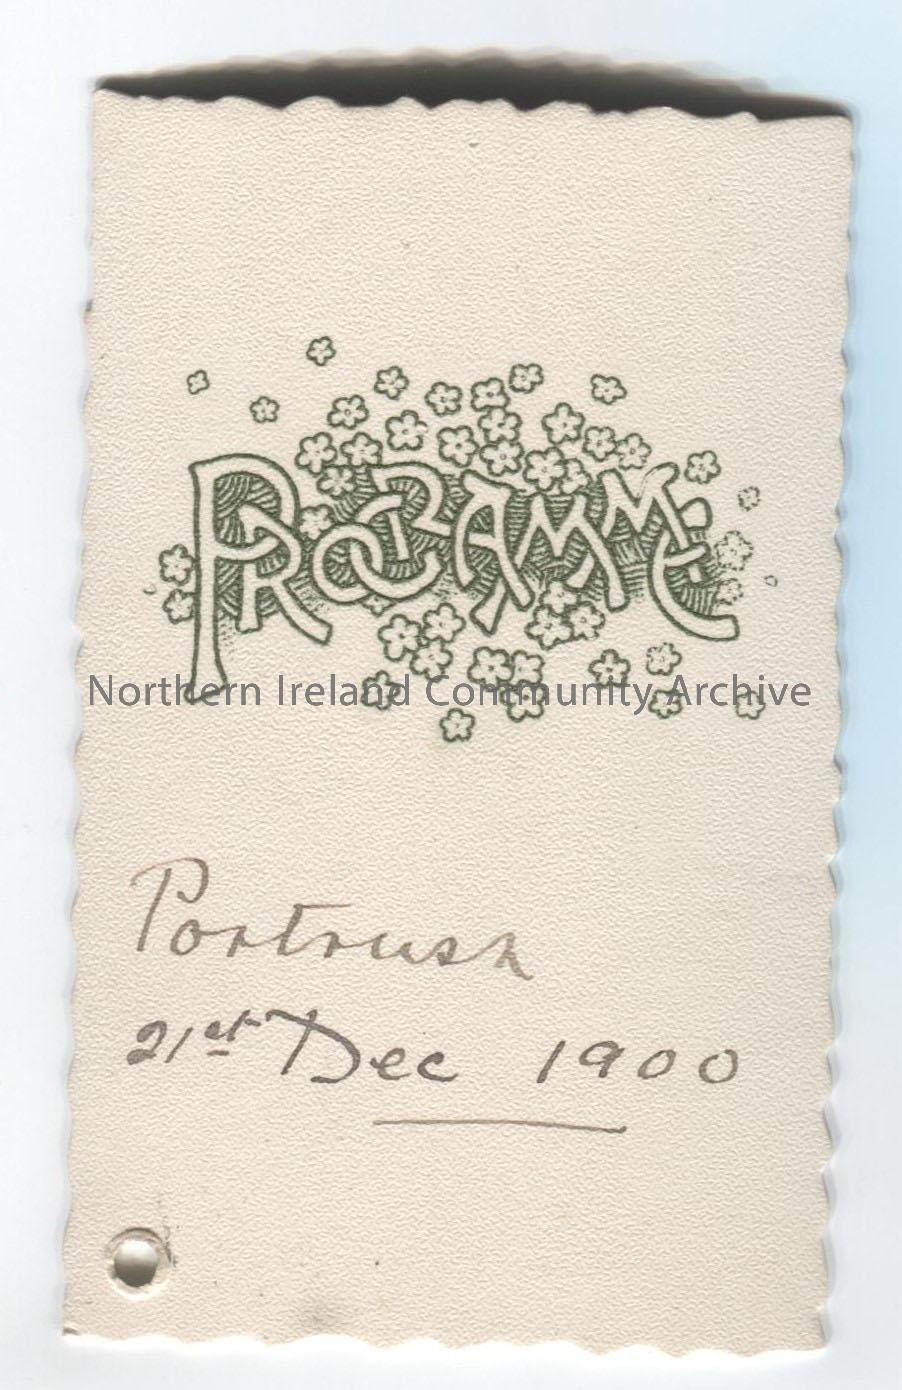 Dance card – Programme, Portrush, 21st Dec 1900. 20 dances listed on reverse.